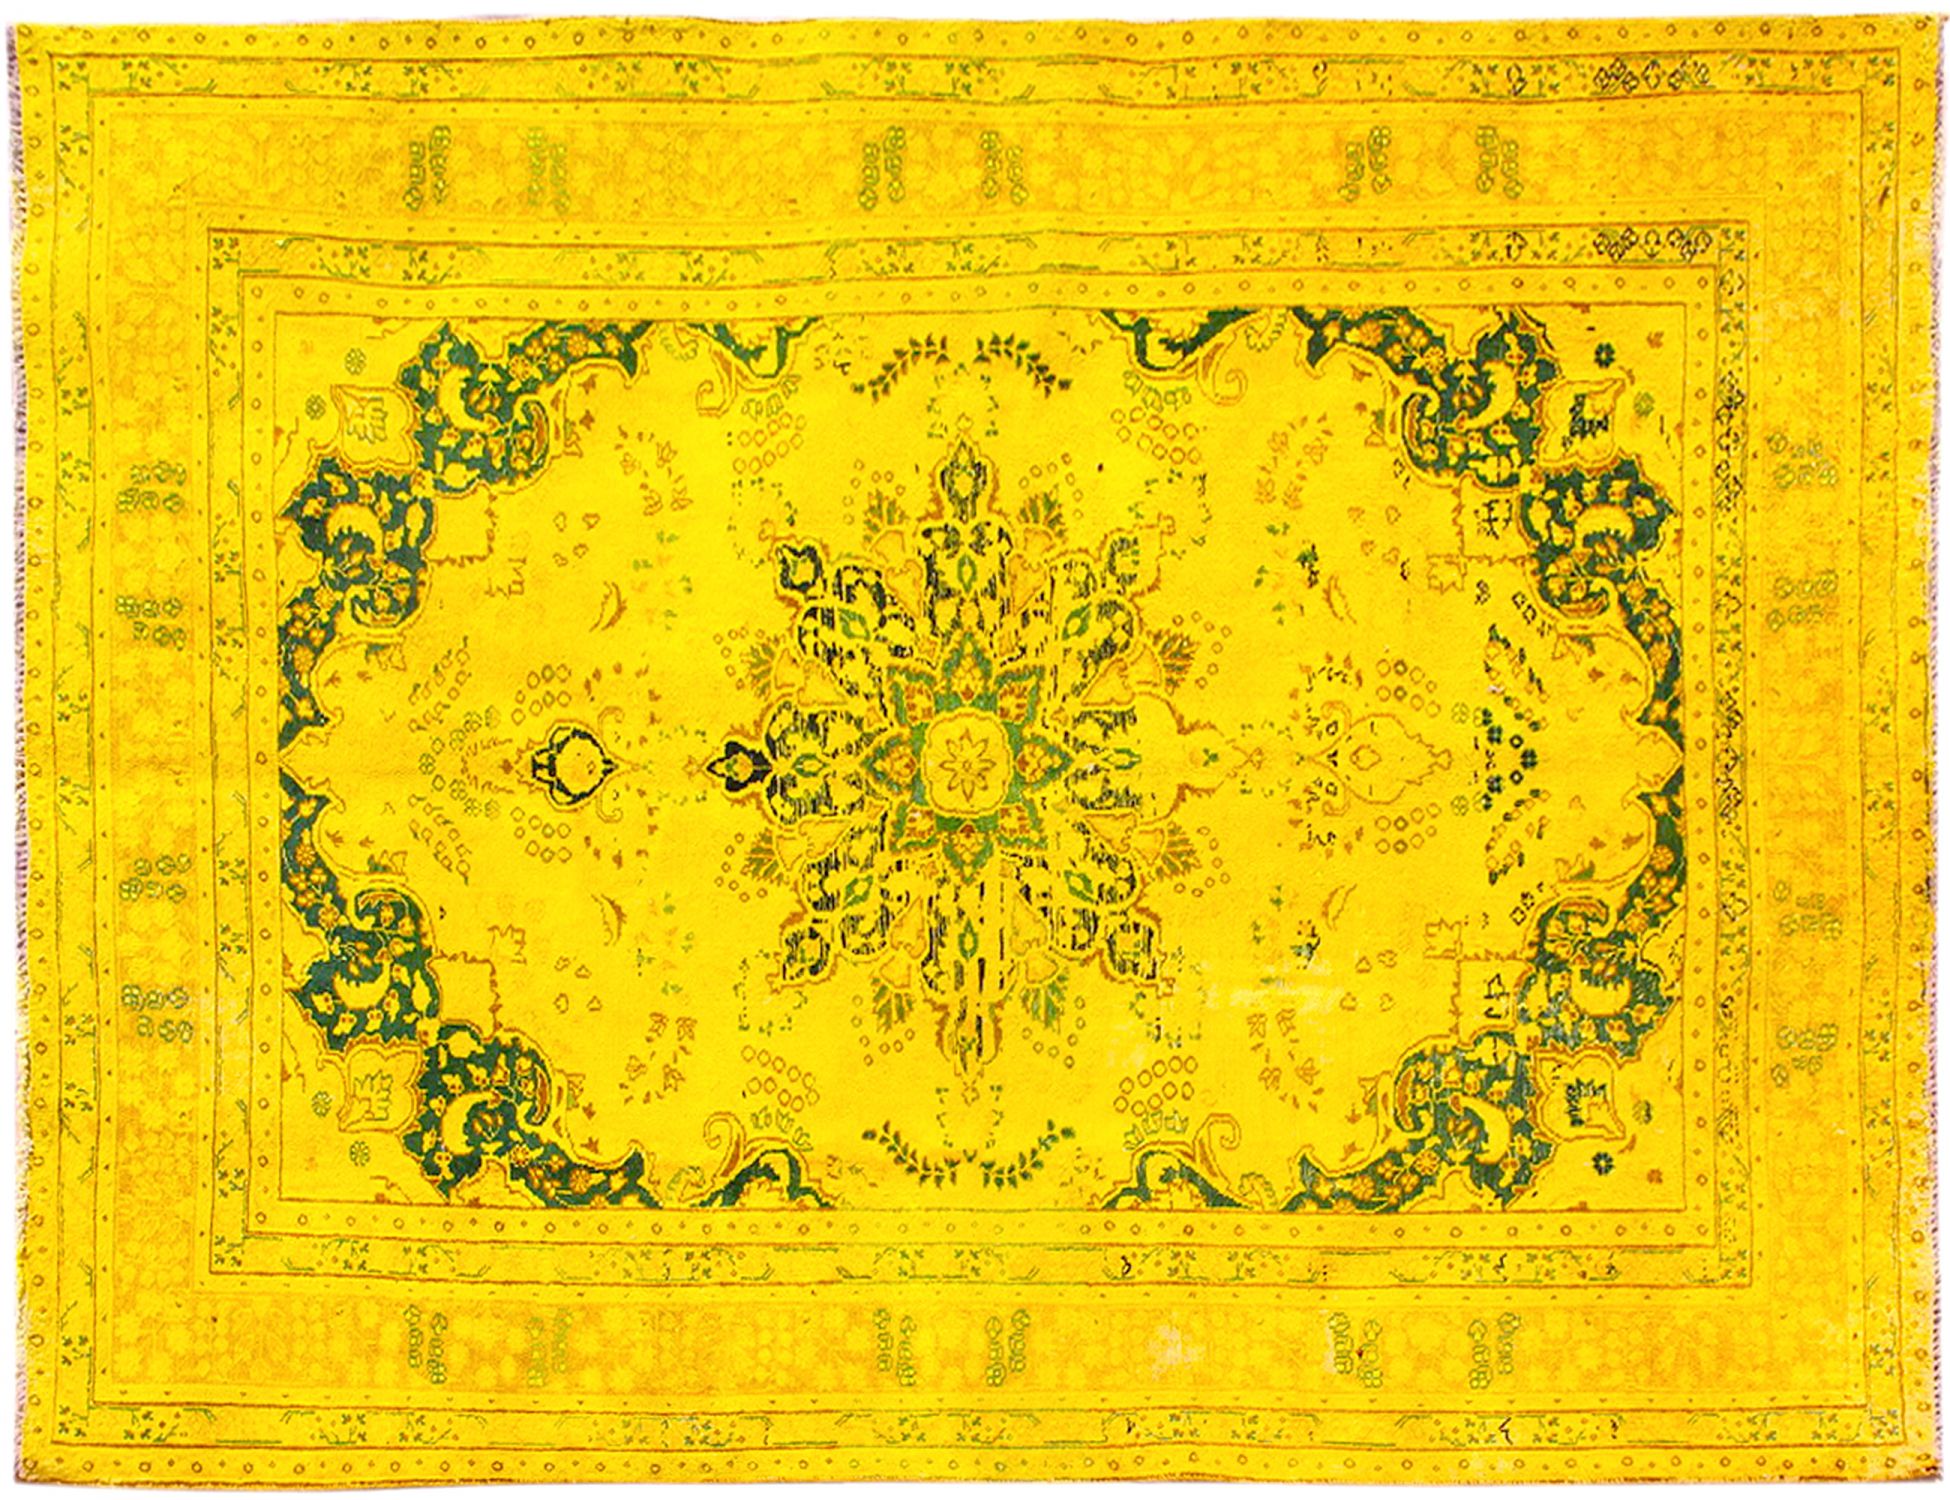 Persischer Vintage Teppich  gelb <br/>290 x 200 cm